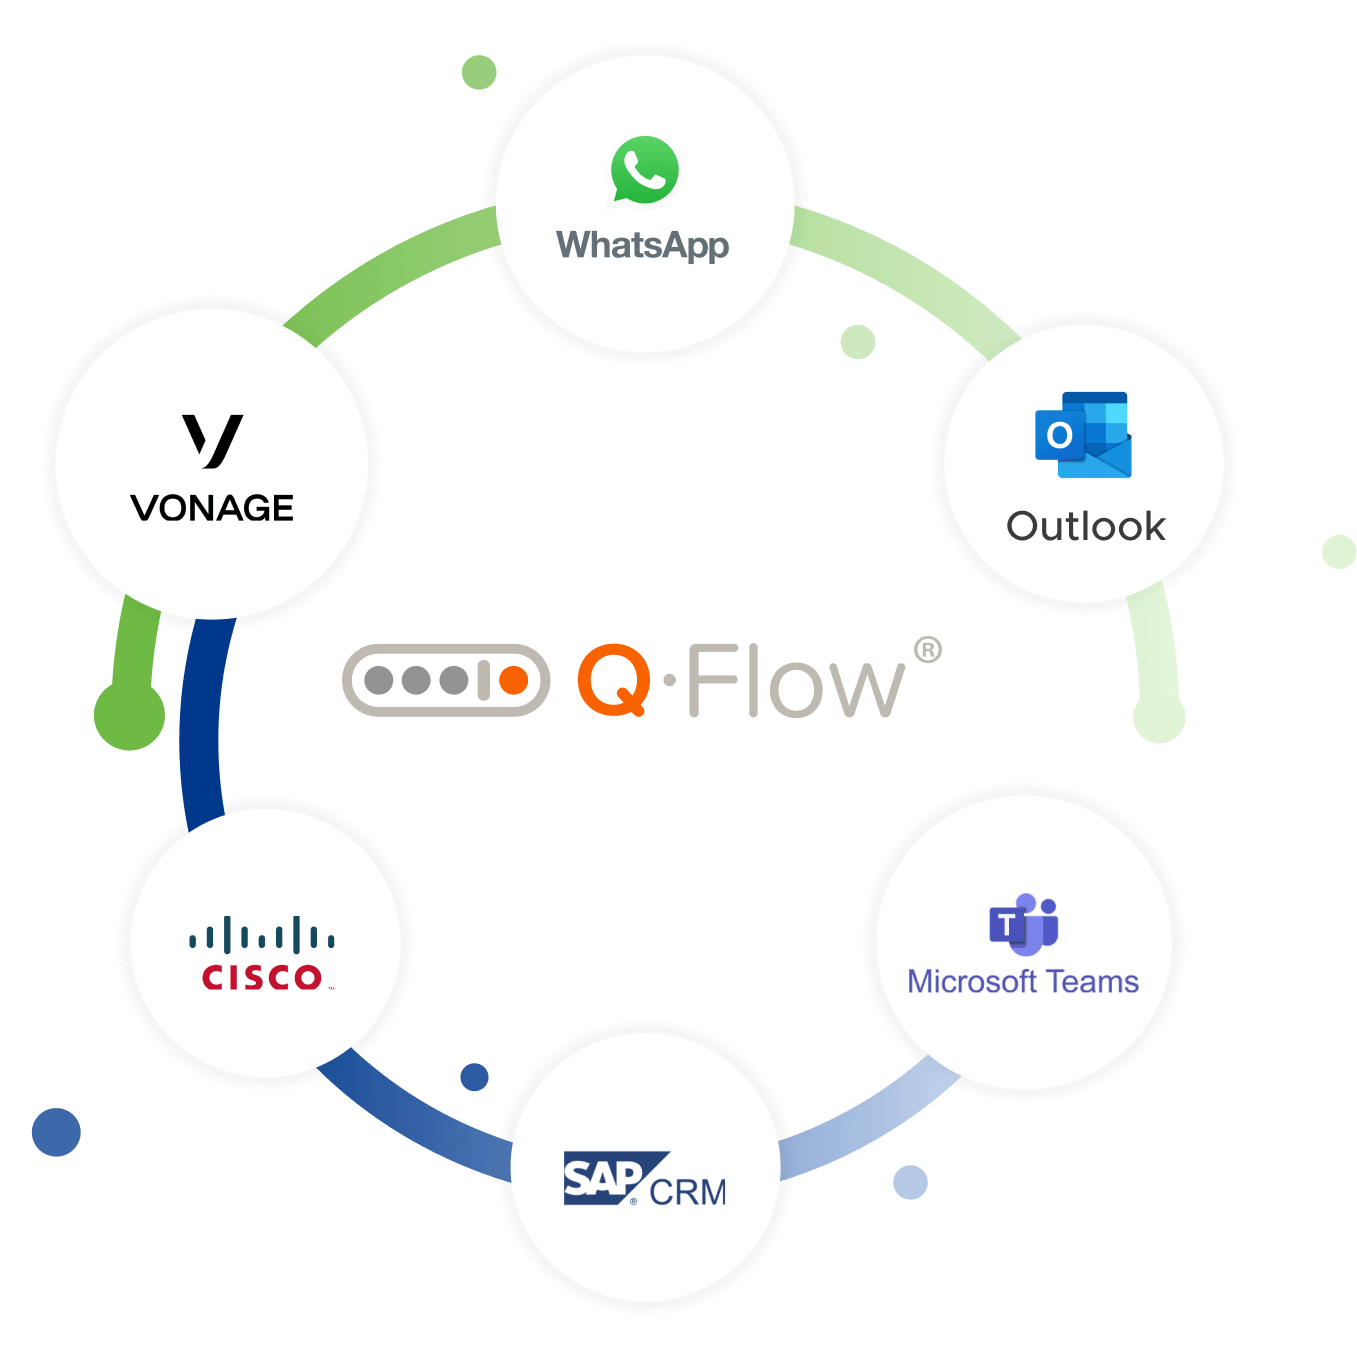 Flujo de integraciones de Q-Flow con otras aplicaciones